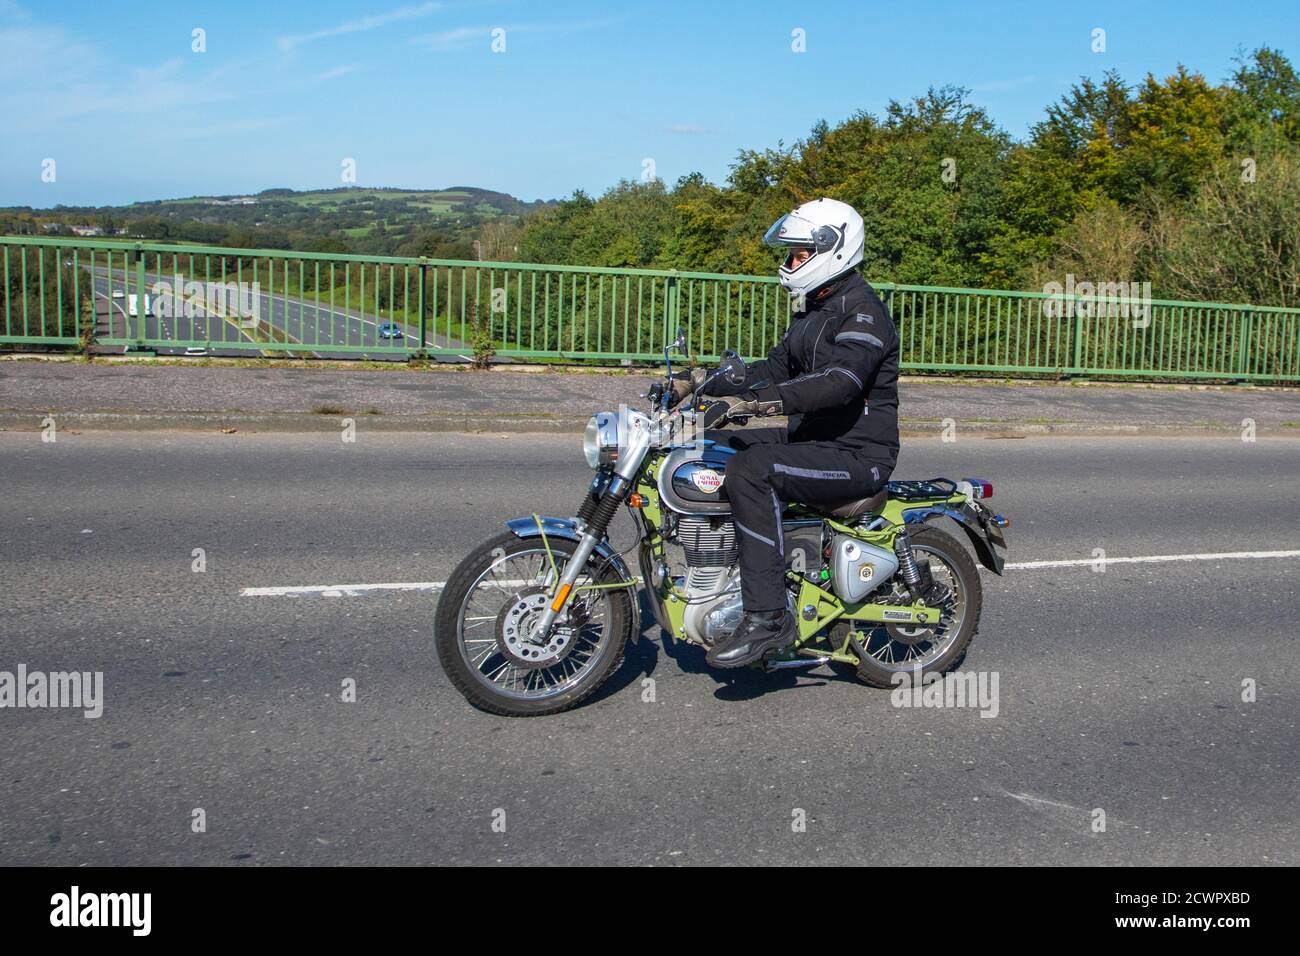 2019 Green Royal Enfield Bullet Trials 500 Motorrad-Fahrer; zwei Rädern Transport, Motorräder, Fahrzeug, Straßen, Motorräder, Motorrad-Fahrer fahren in Chorley, Großbritannien Stockfoto